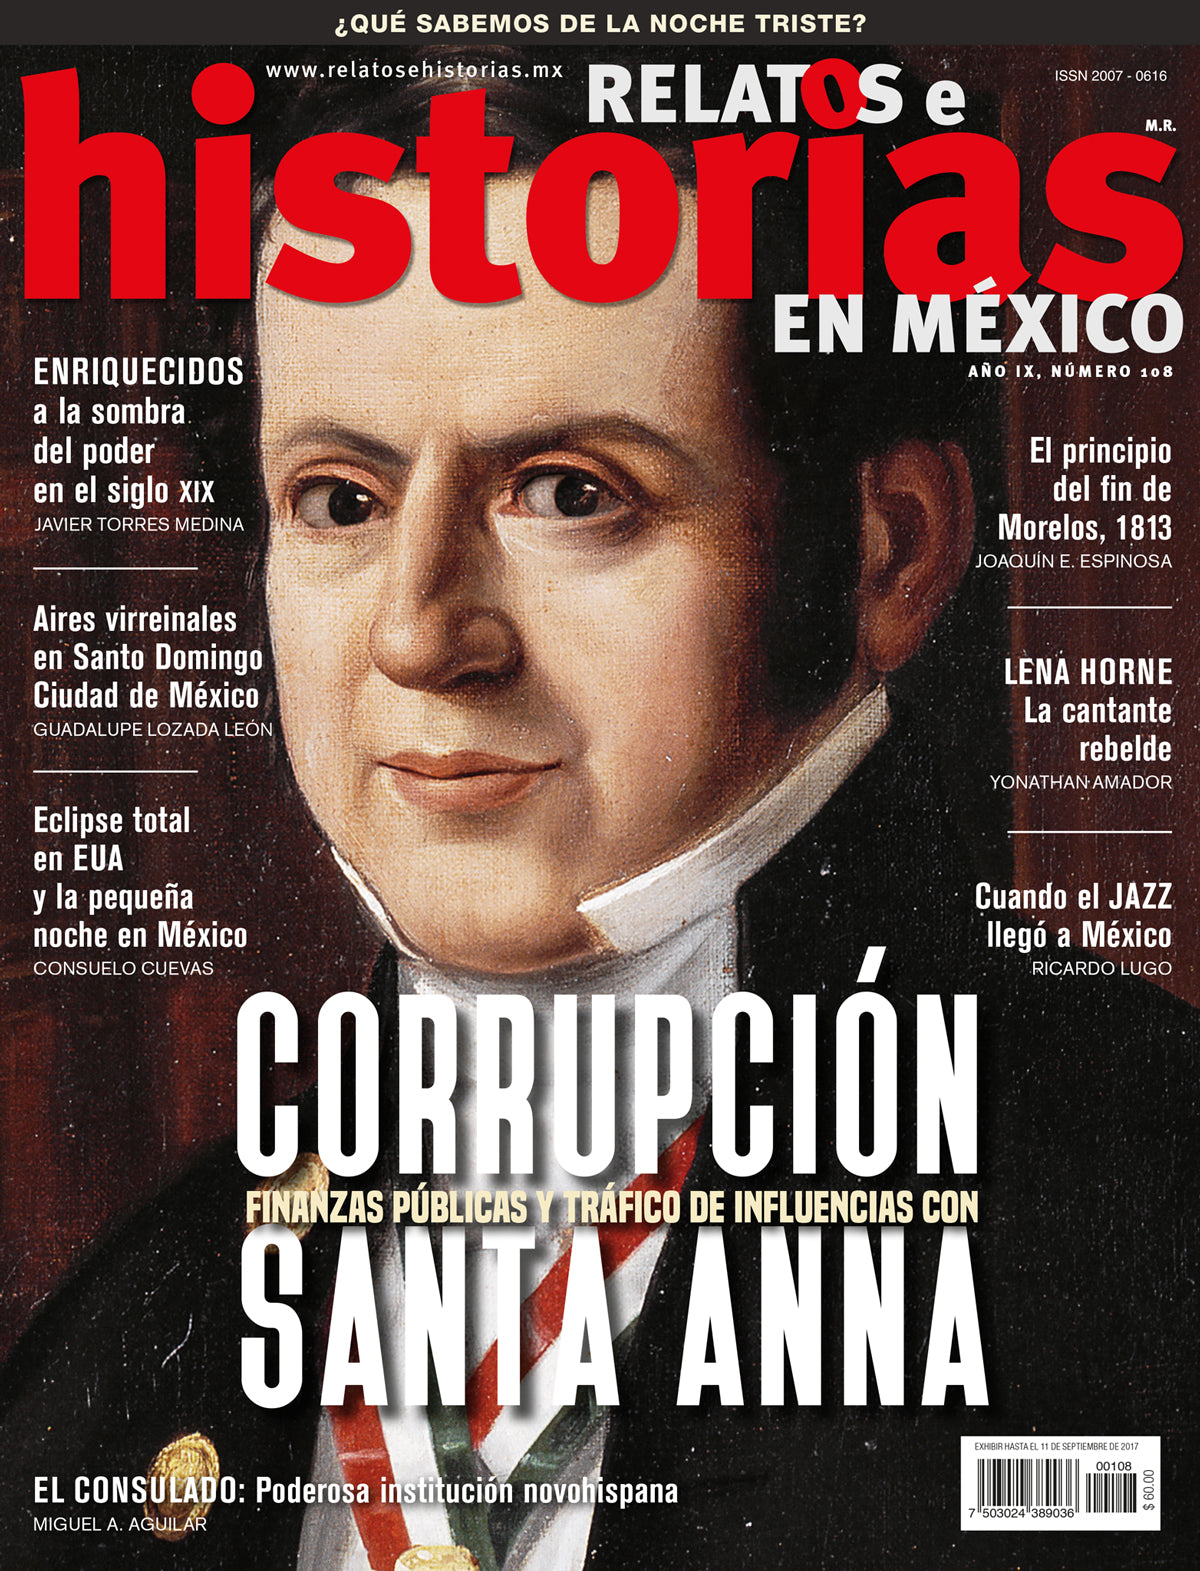 Corrupción, finanzas públicas y tráfico de influencias con  Santa Anna